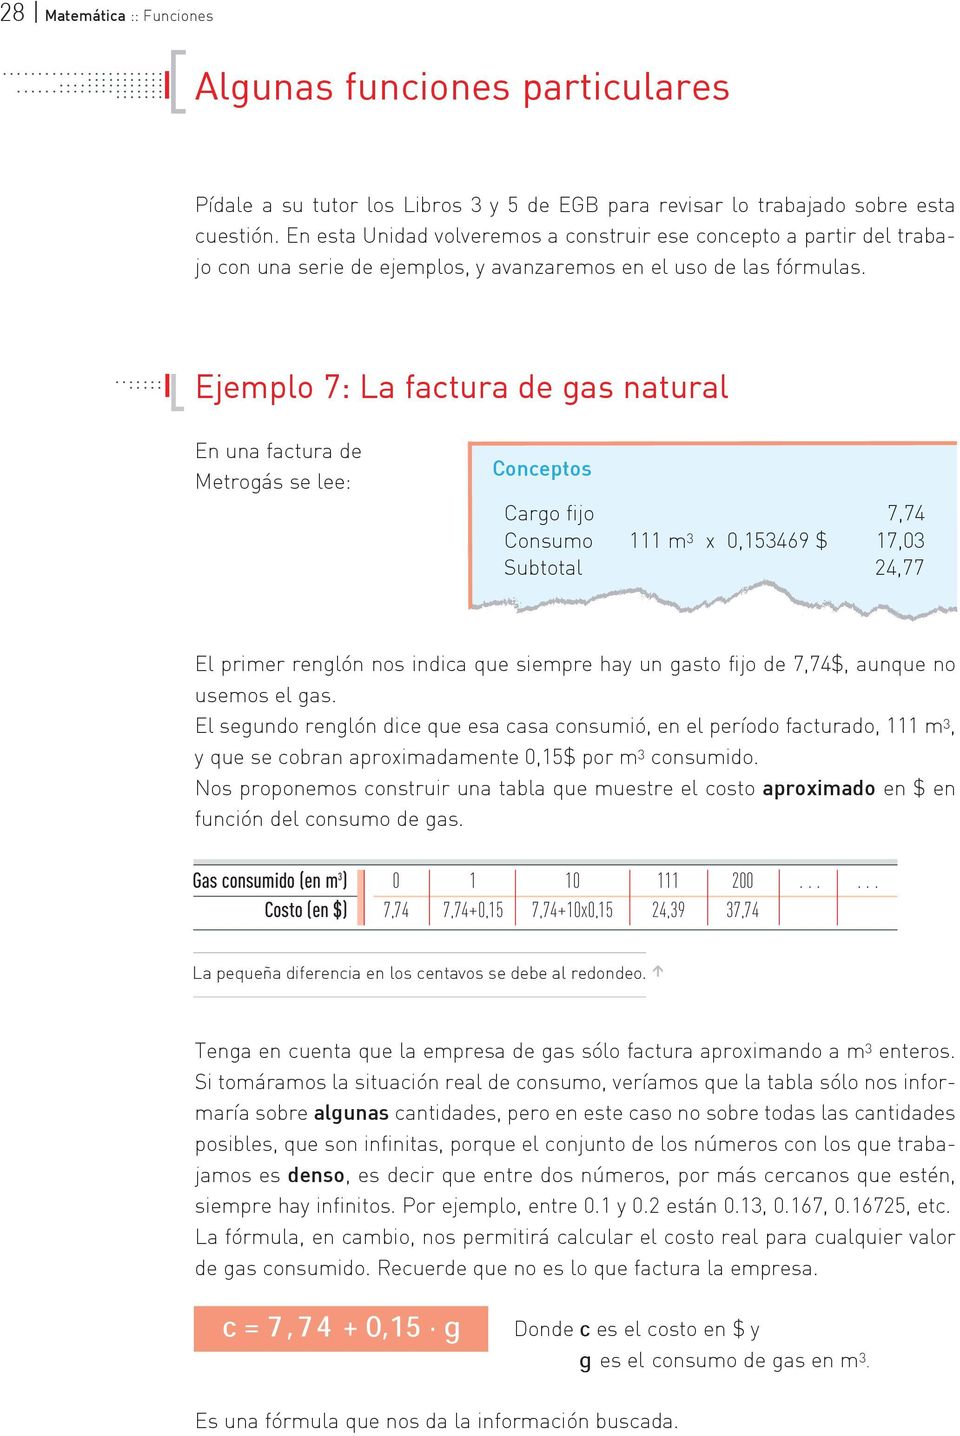 ............ Ejemplo 7: La factura de gas natural En una factura de Metrogás se lee: Conceptos Cargo fijo 7,74 Consumo 111 m 3 x 0,153469 $ 17,03 Subtotal 24,77 El primer renglón nos indica que